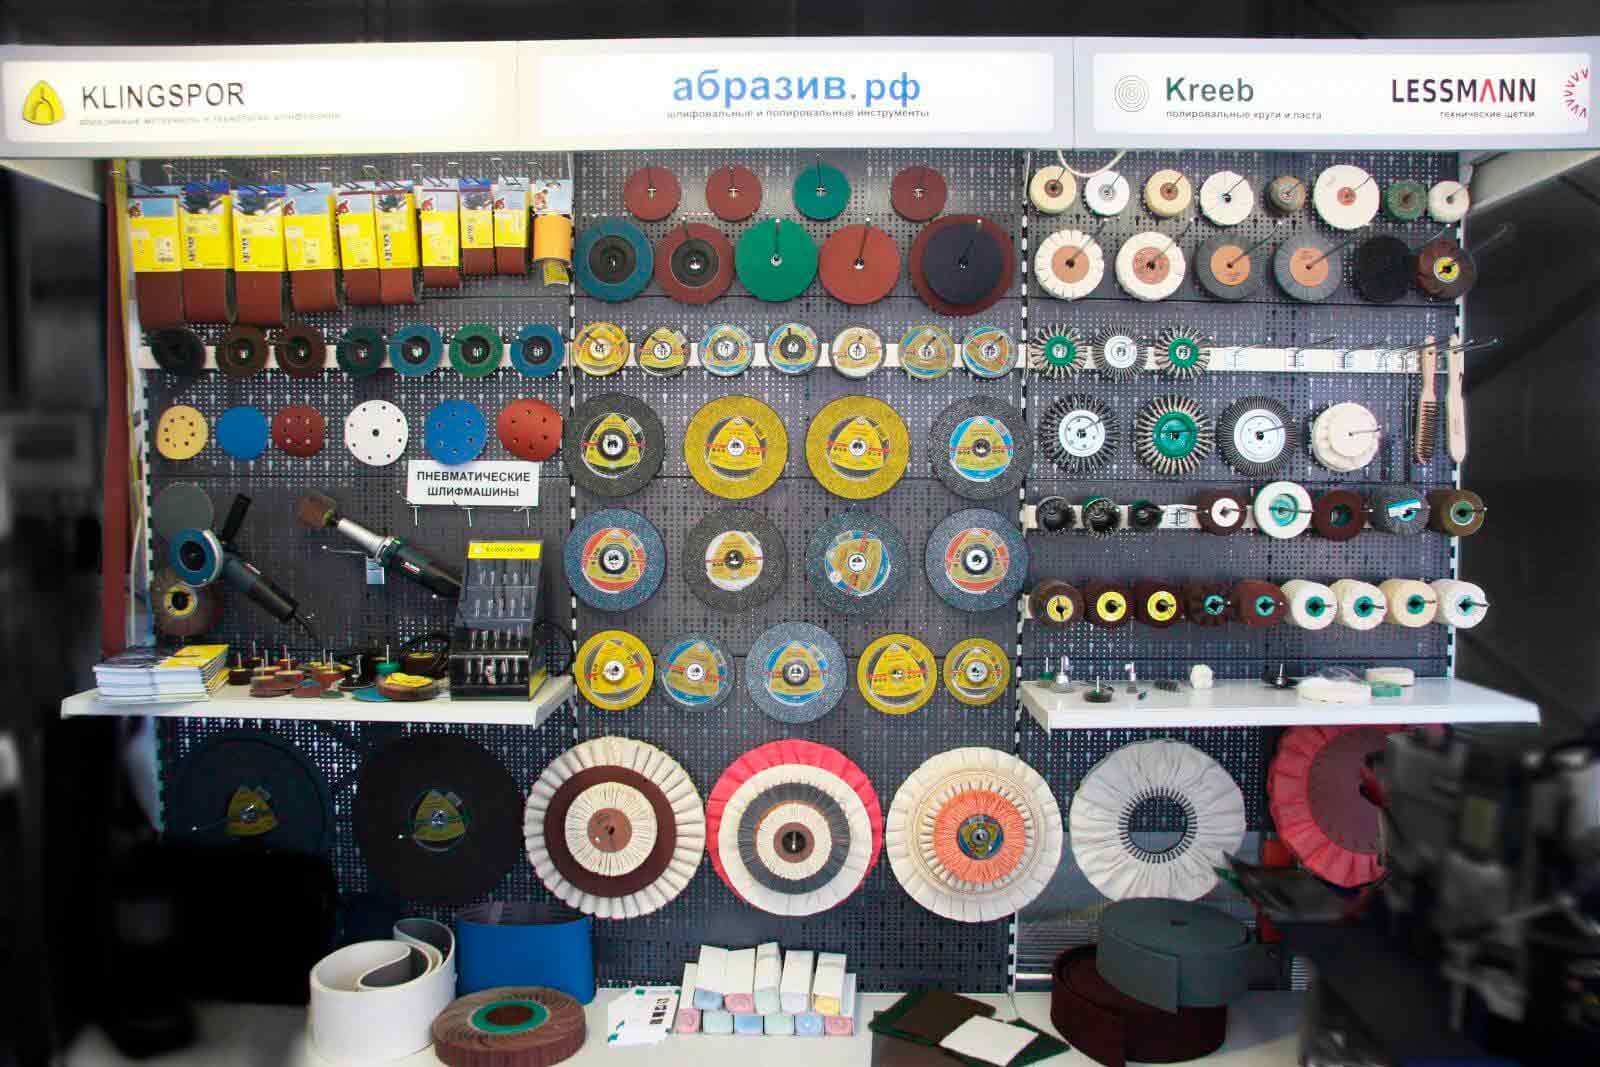 абразив.рф на выставке металлообработка 2012 абразивные материалы и инструменты